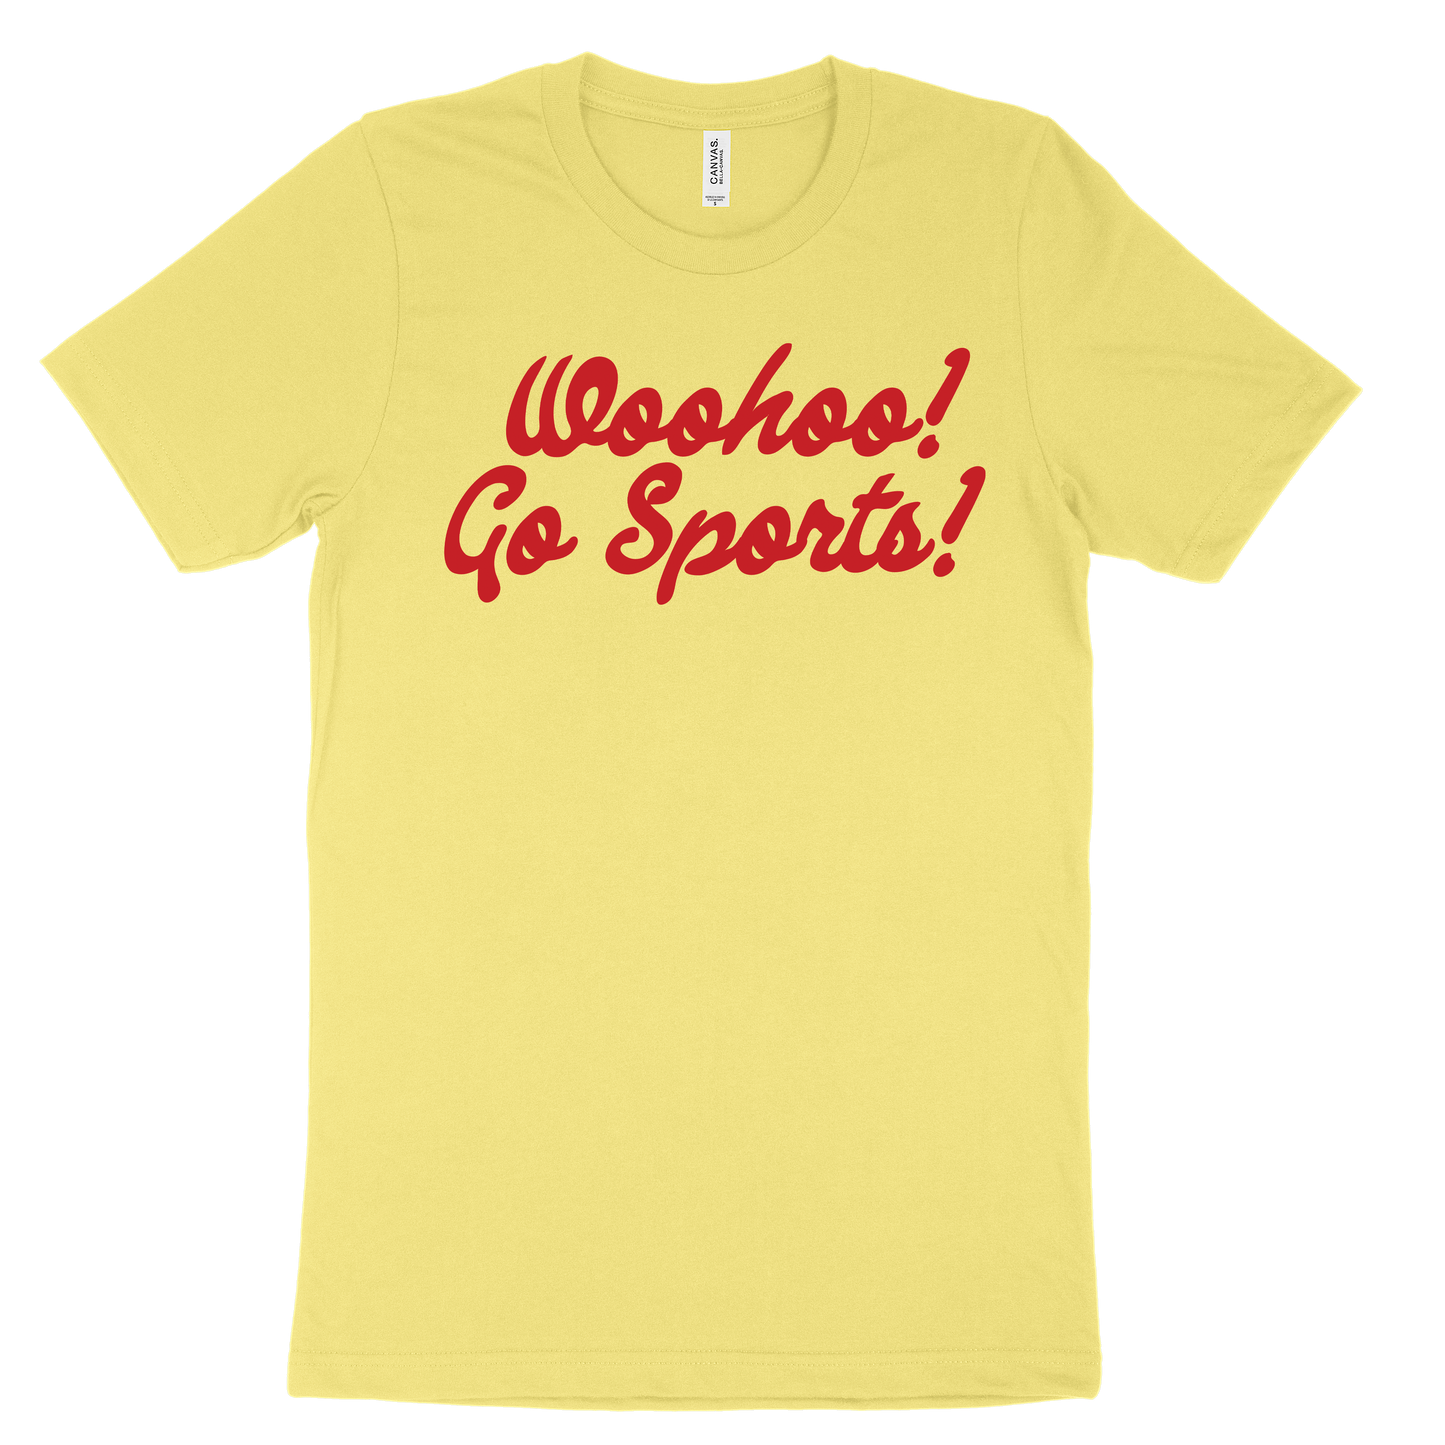 Woohoo! Go Sports! Tee - Yellow